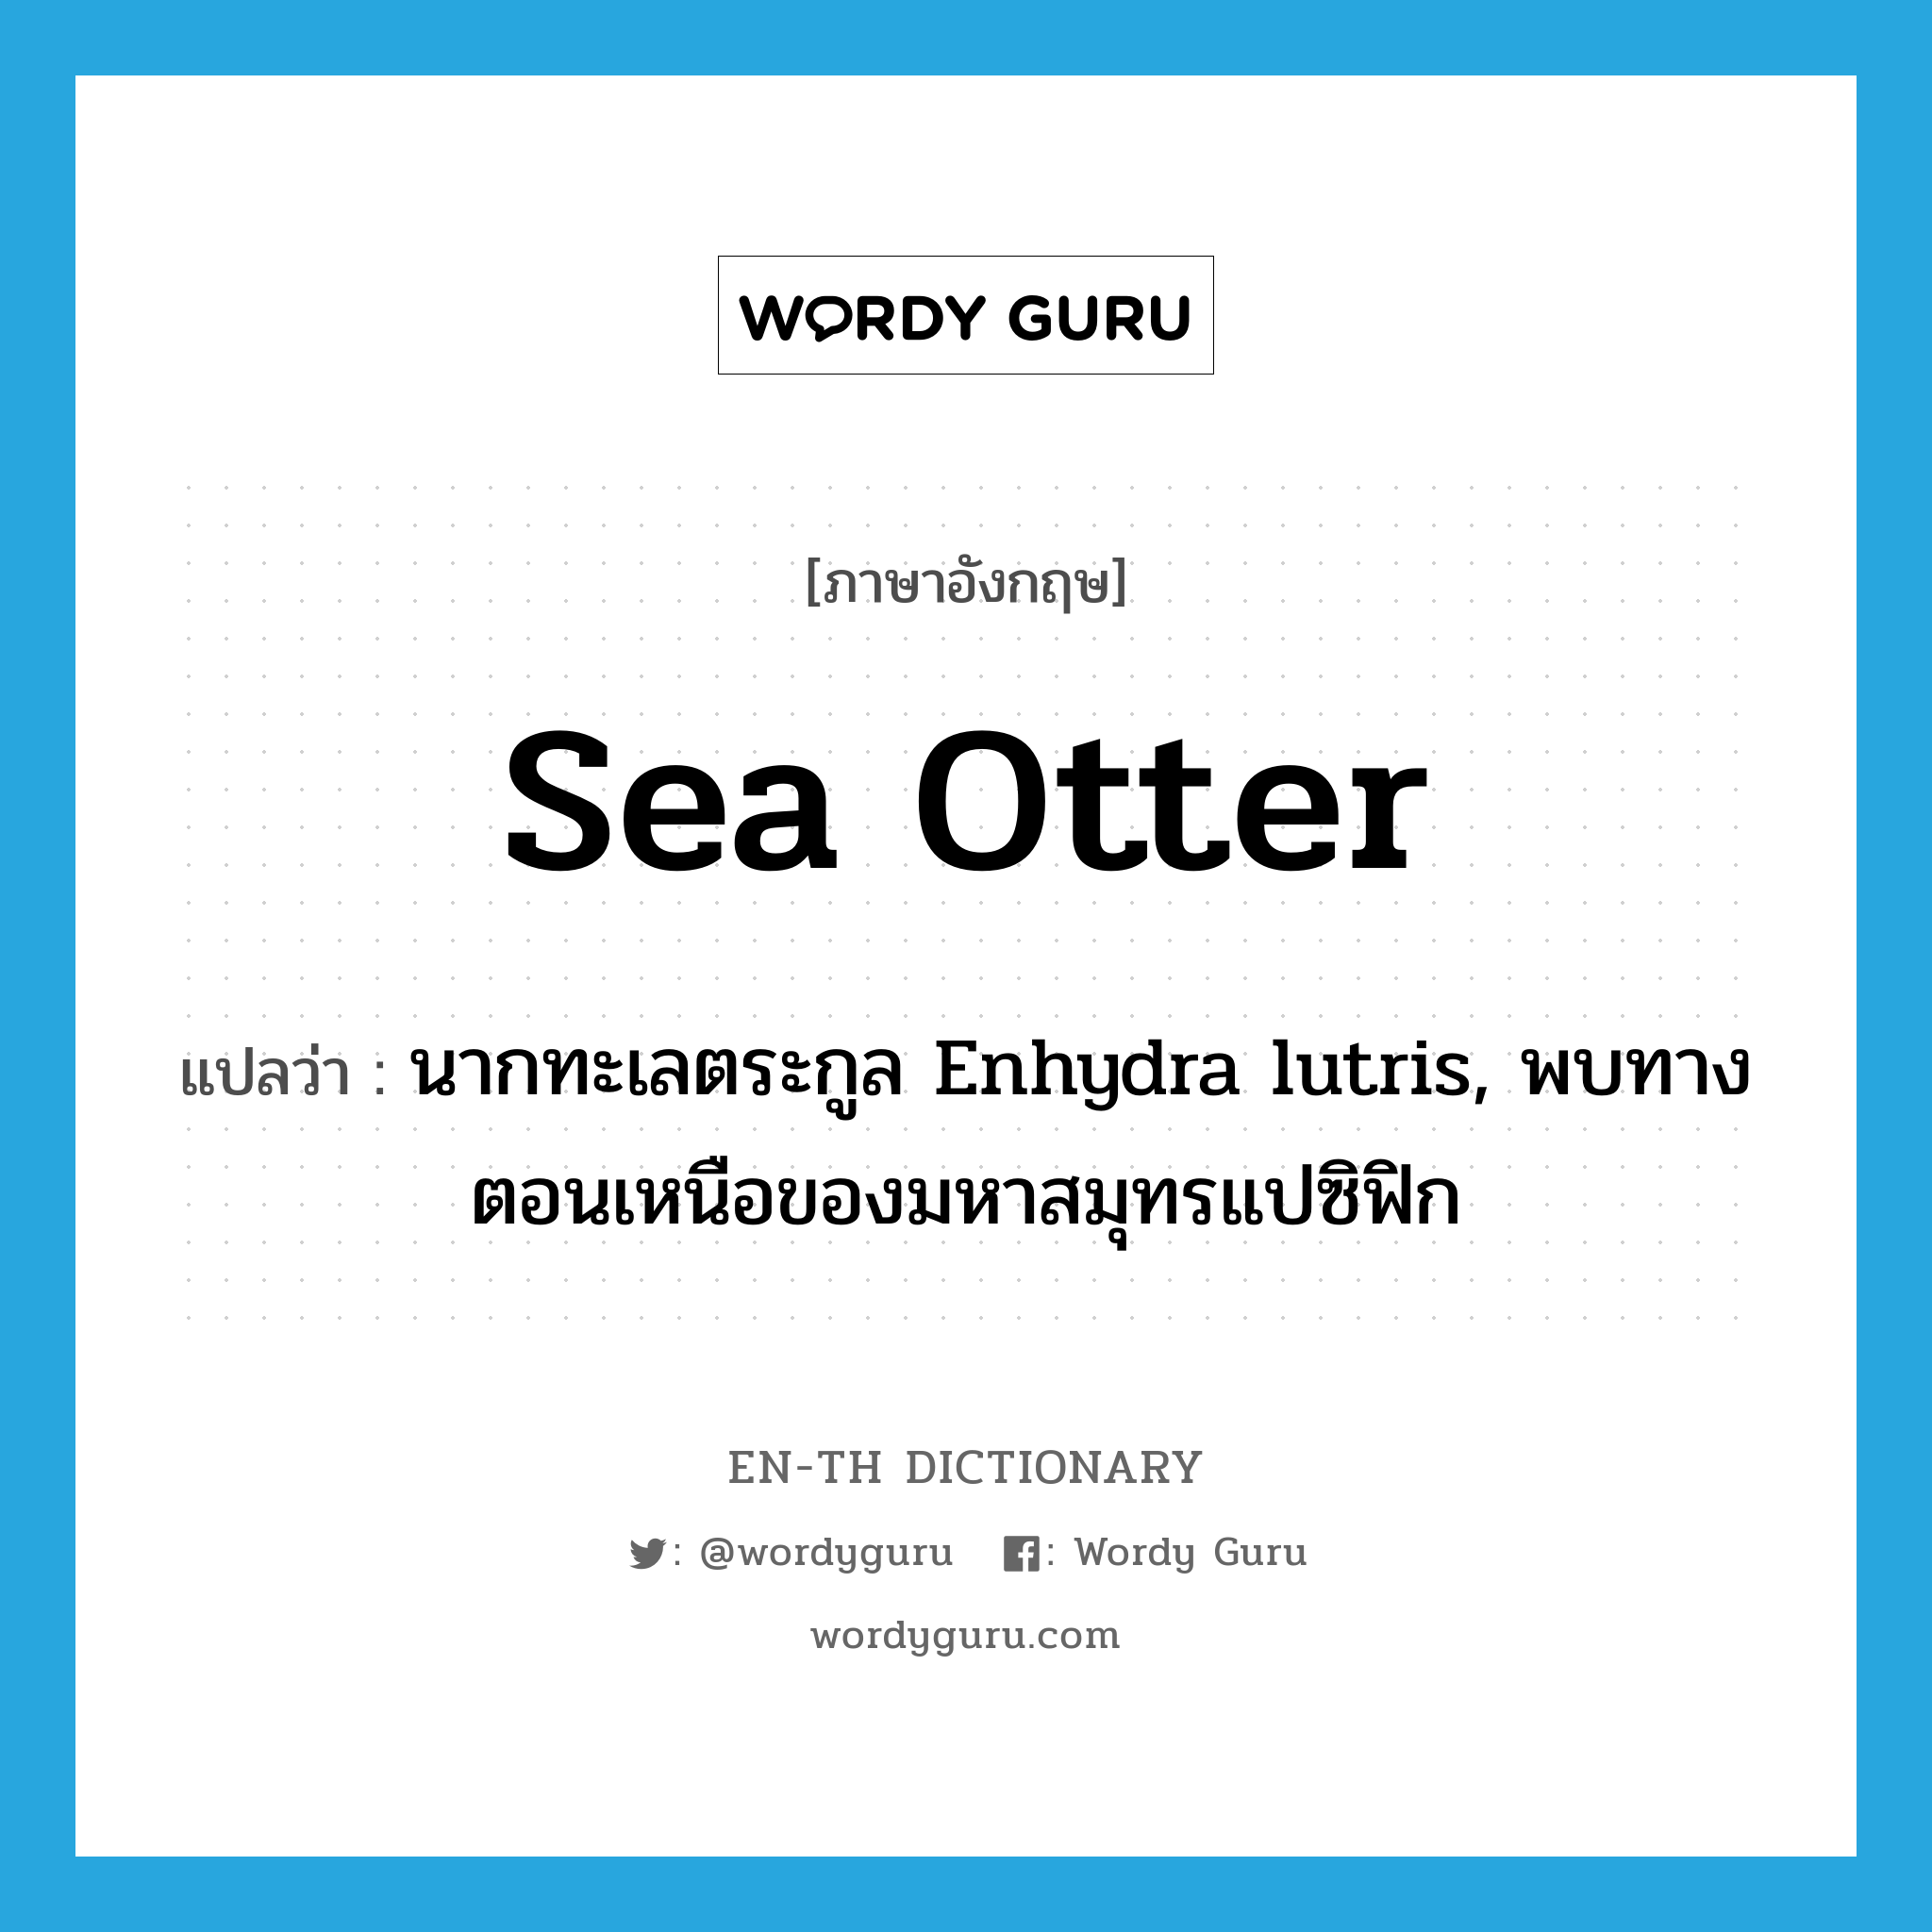 sea otter แปลว่า?, คำศัพท์ภาษาอังกฤษ sea otter แปลว่า นากทะเลตระกูล Enhydra lutris, พบทางตอนเหนือของมหาสมุทรแปซิฟิก ประเภท N หมวด N